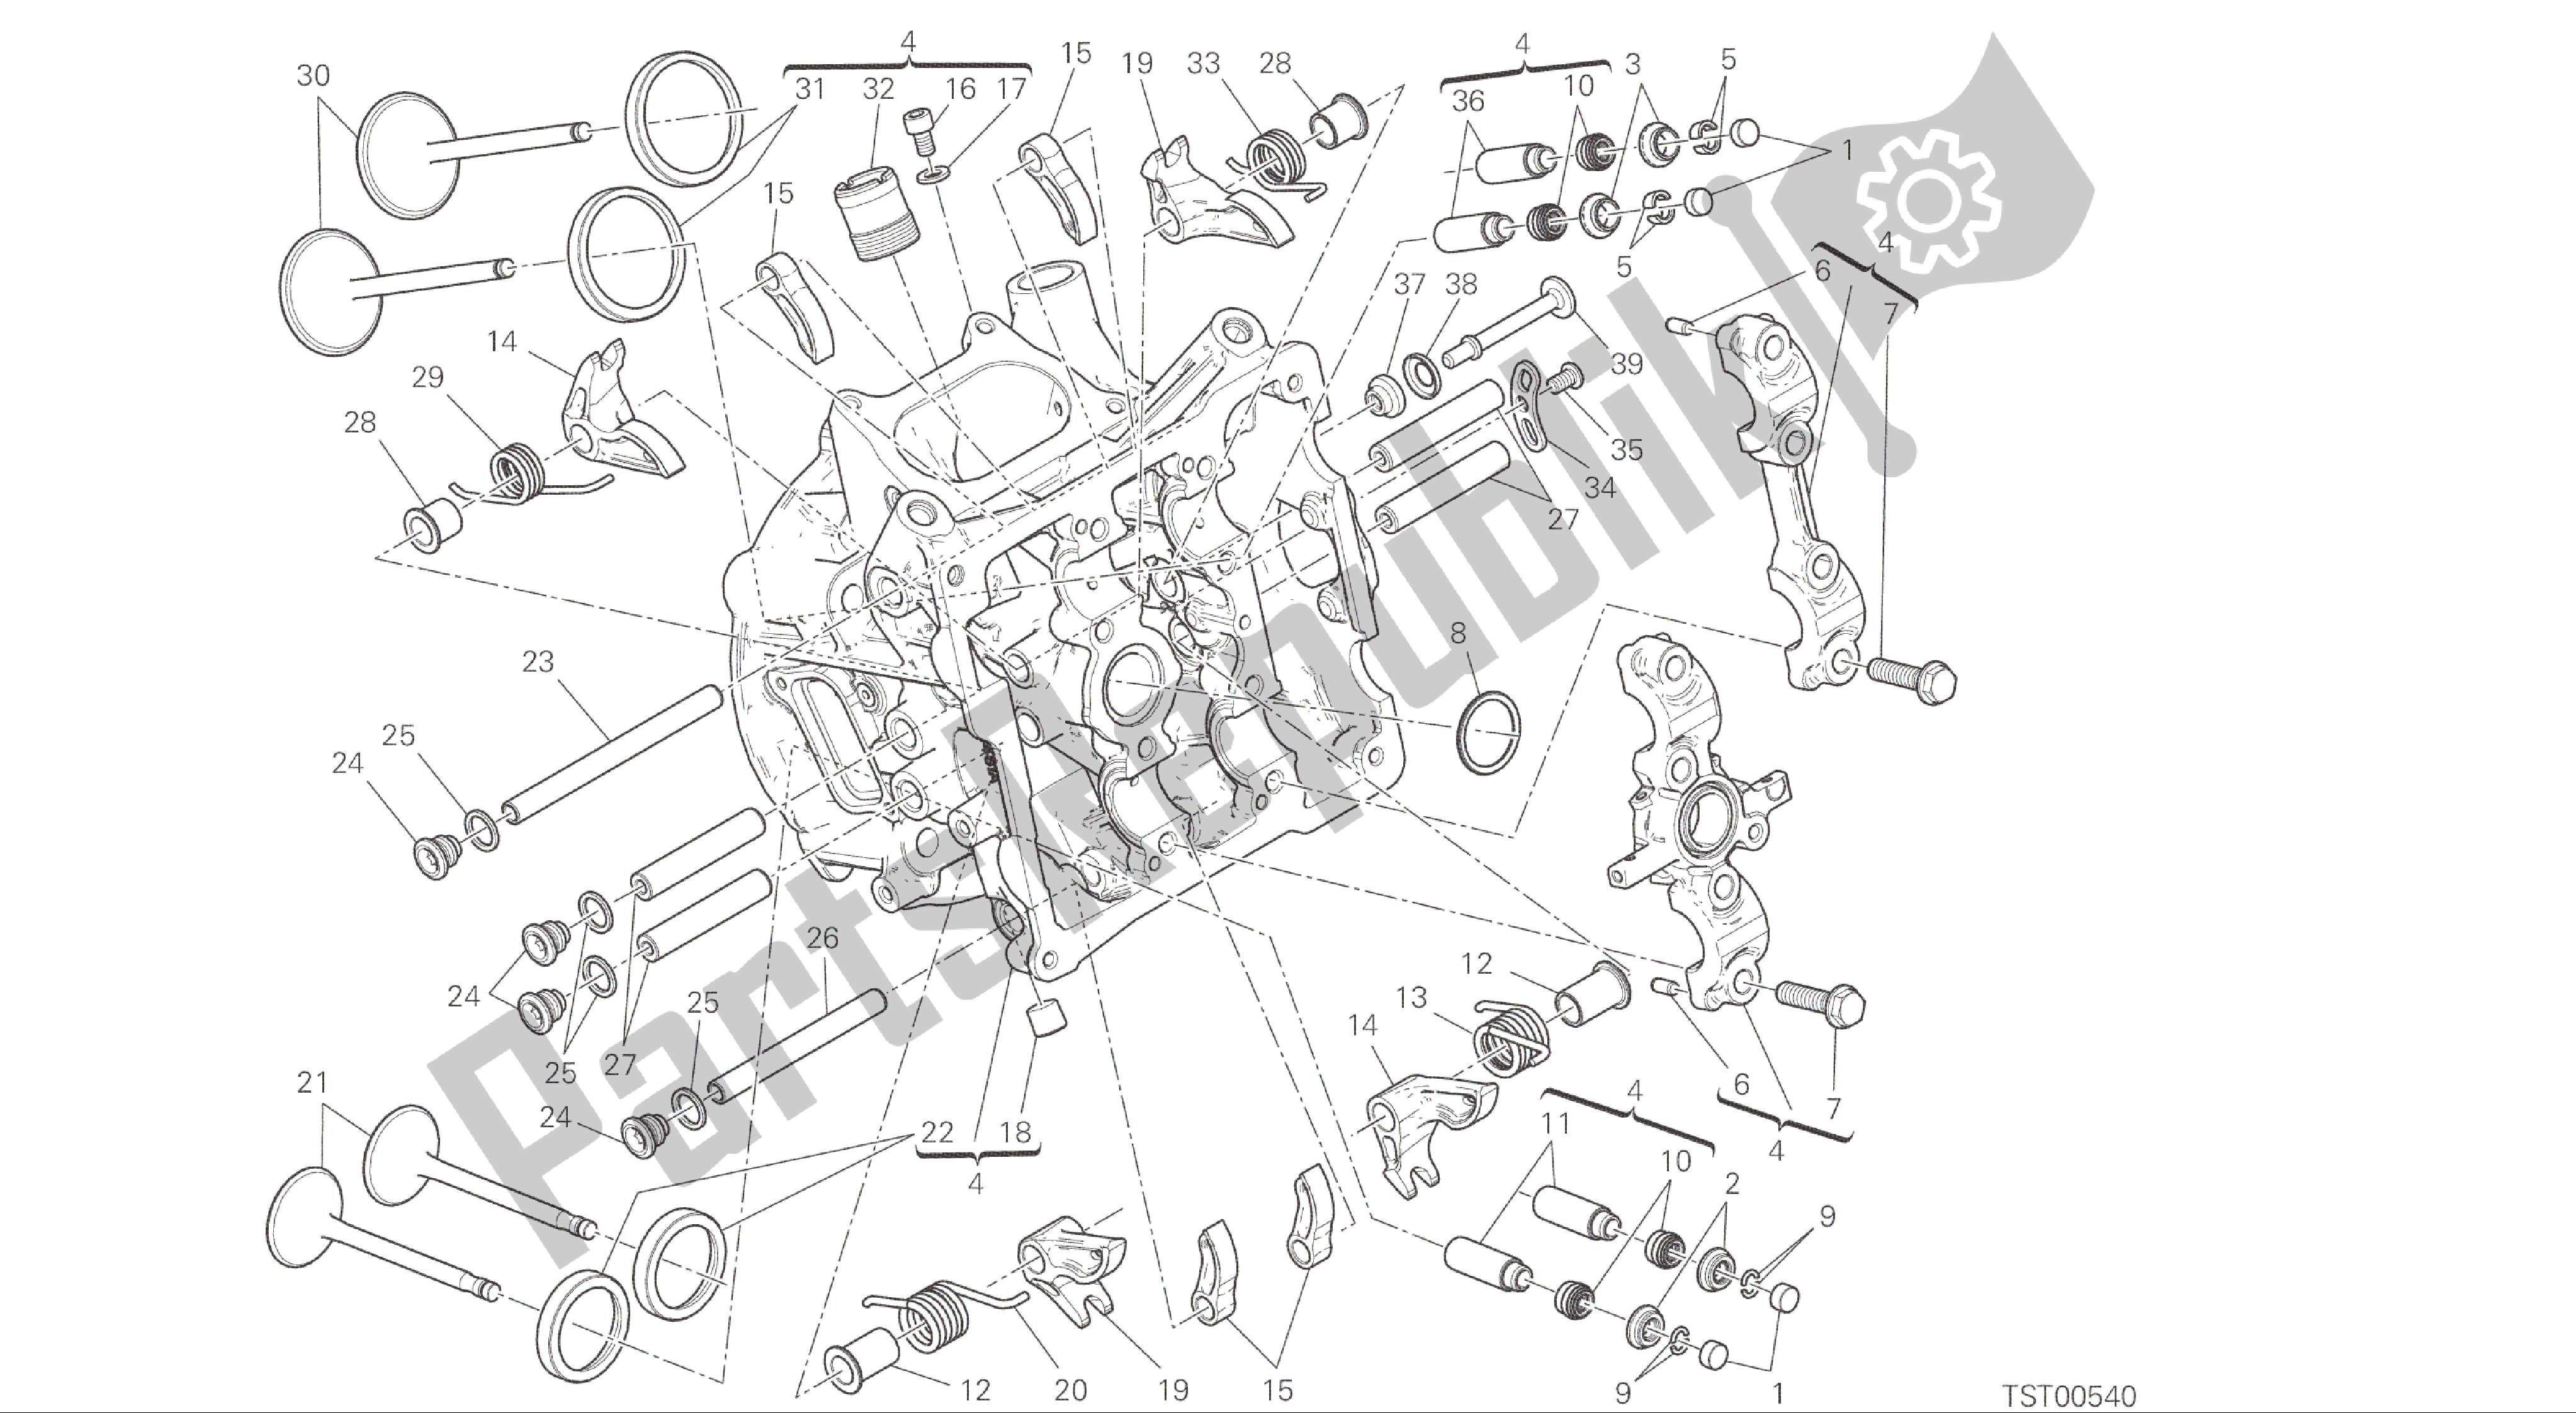 Alle onderdelen voor de Tekening 014 - Horizontale Kop [mod: 1299; Xst: Aus, Eur, Fra, Jap, Twn] Groepsmotor van de Ducati Panigale ABS 1299 2016